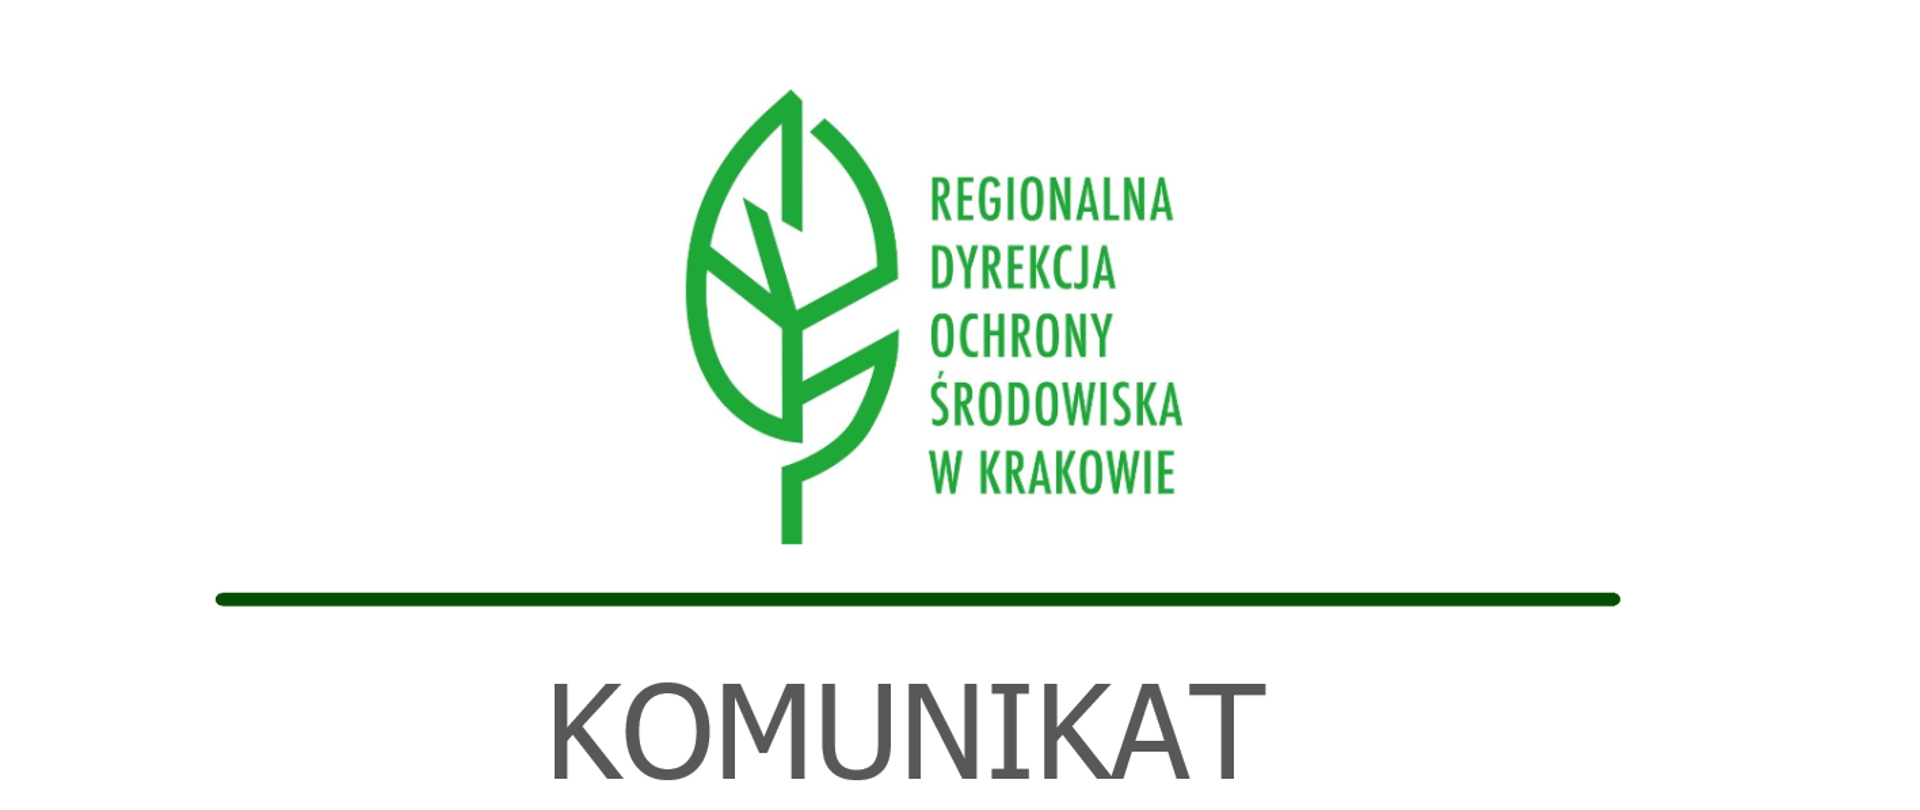 napis komunikat, na białym tle zielony liść logo Regionalnej Dyrekcji Ochrony Środowiska w Krakowie